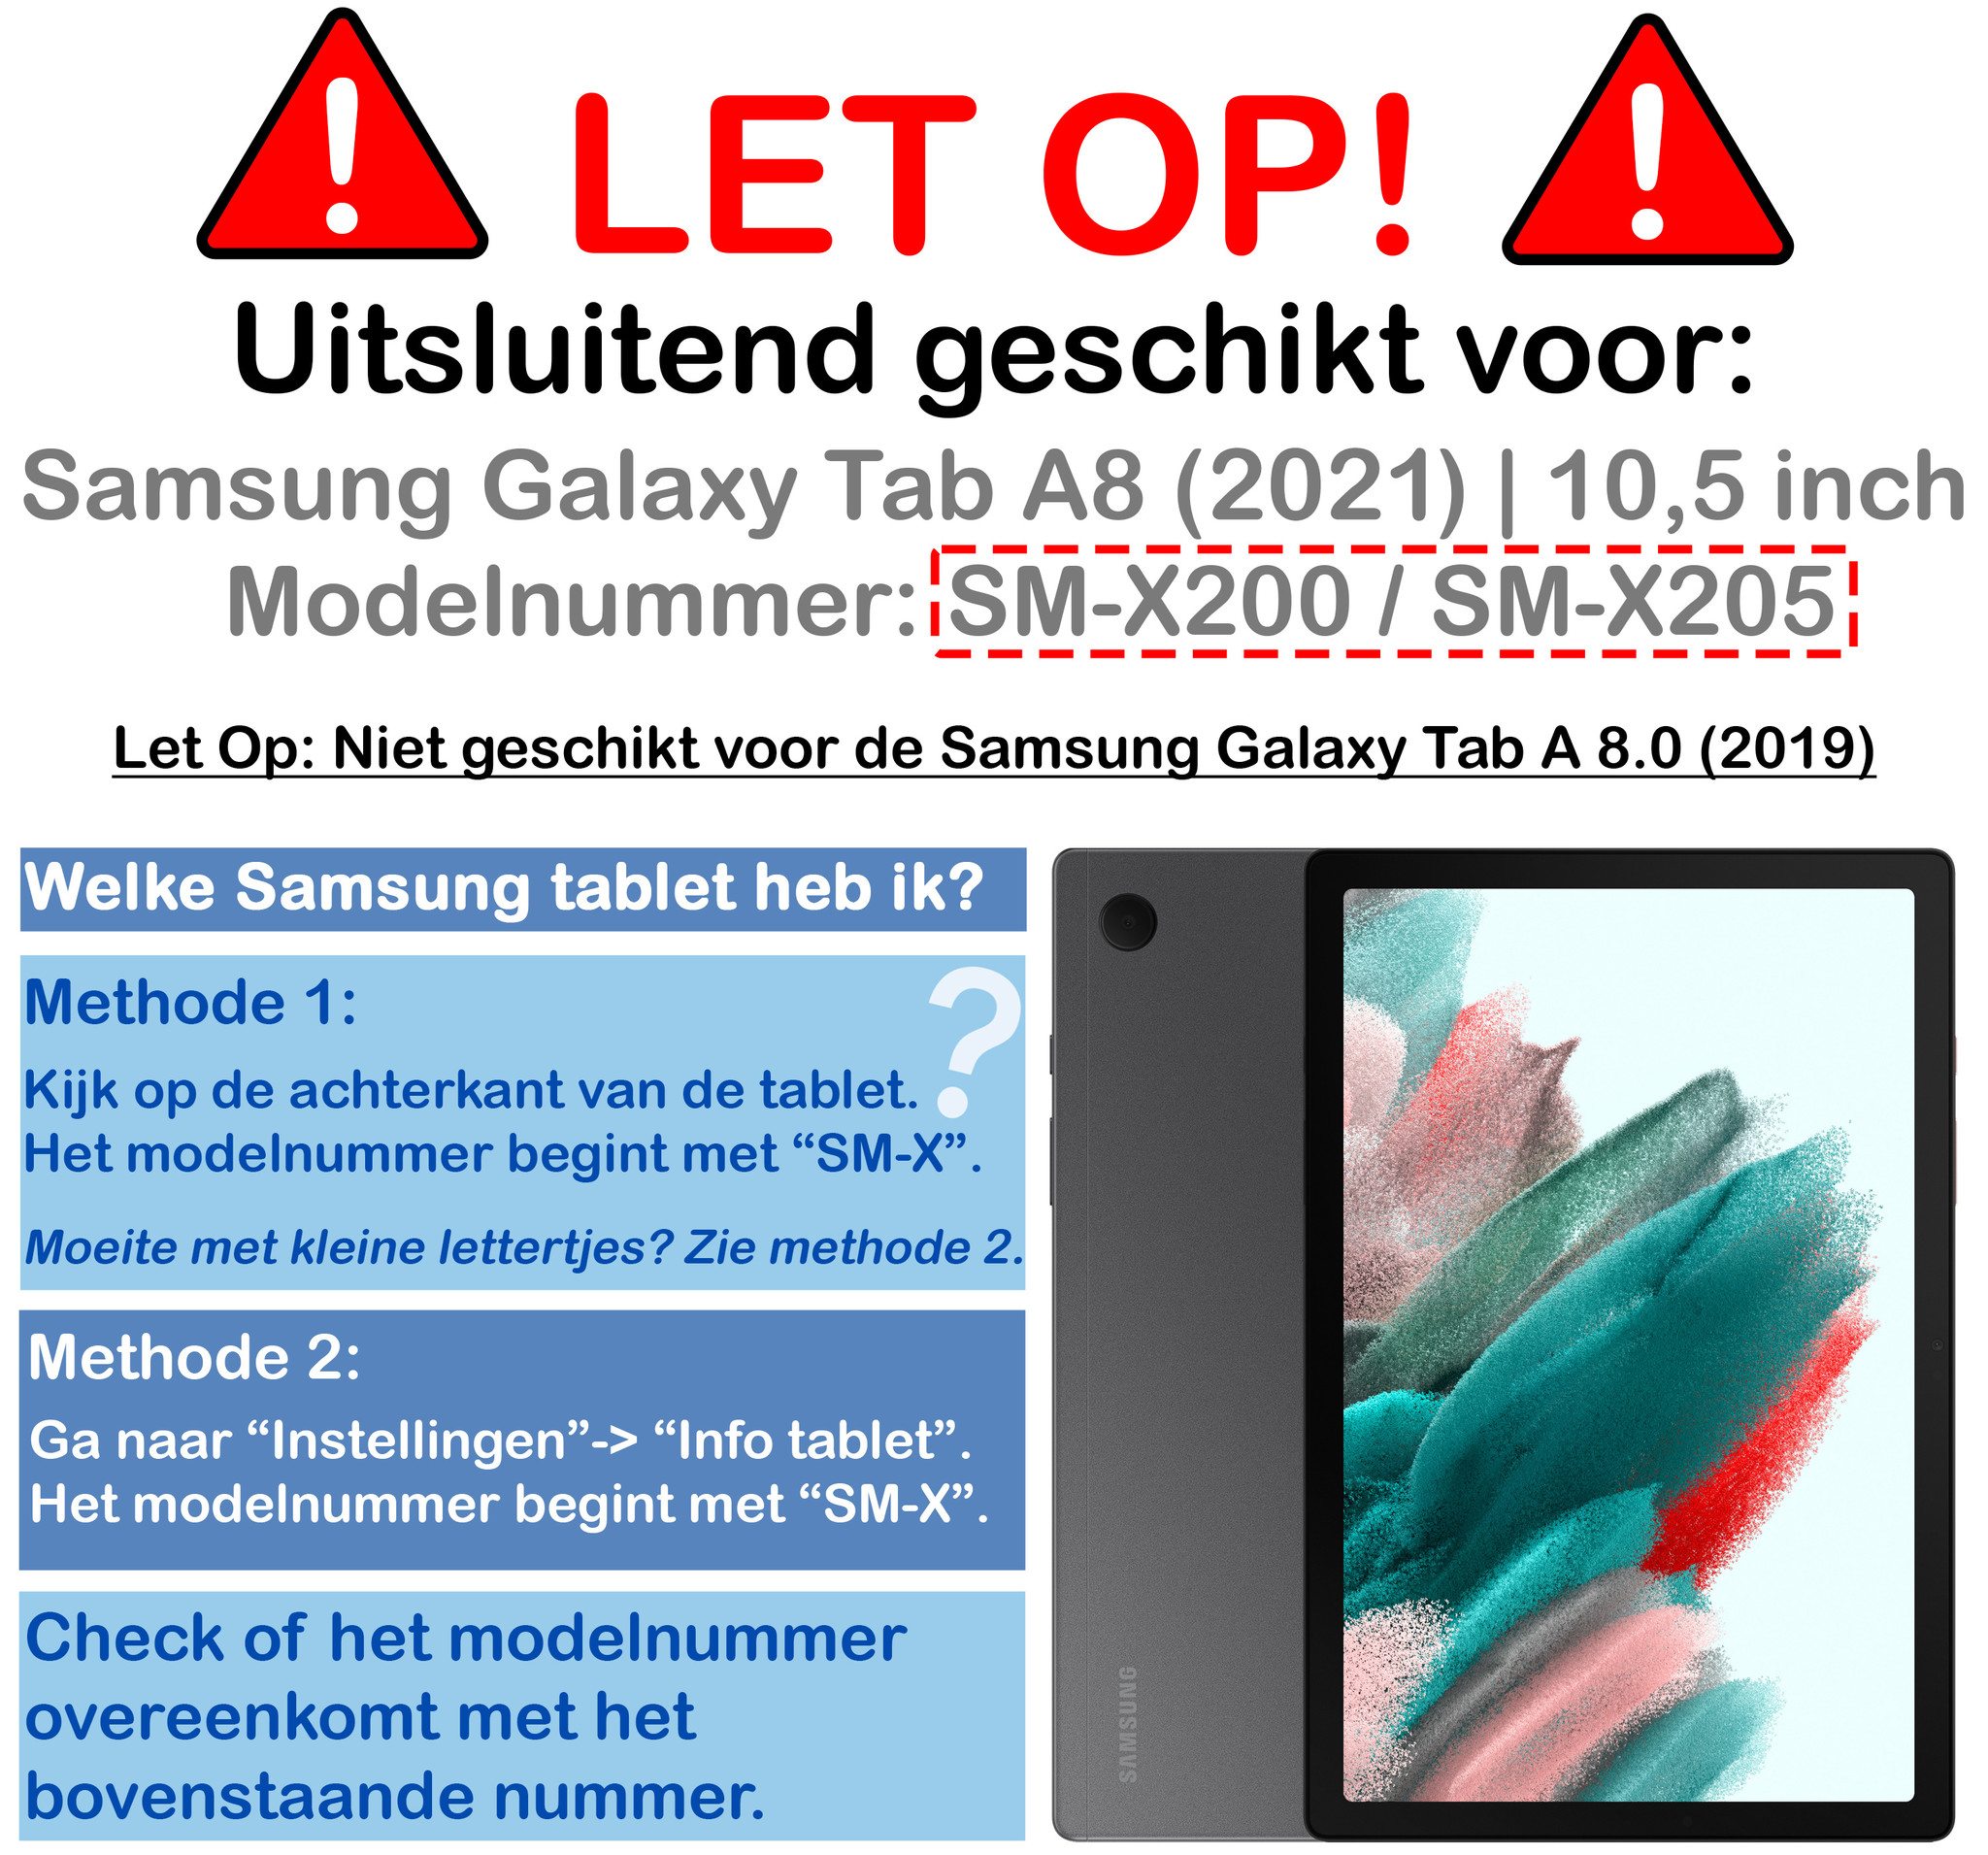 Samsung Galaxy Tab A8 Hoes Kids Case Zwart Met 2x Screenprotector Beschermglas - Samsung Tab A8 Kinderhoes Cover Zwart